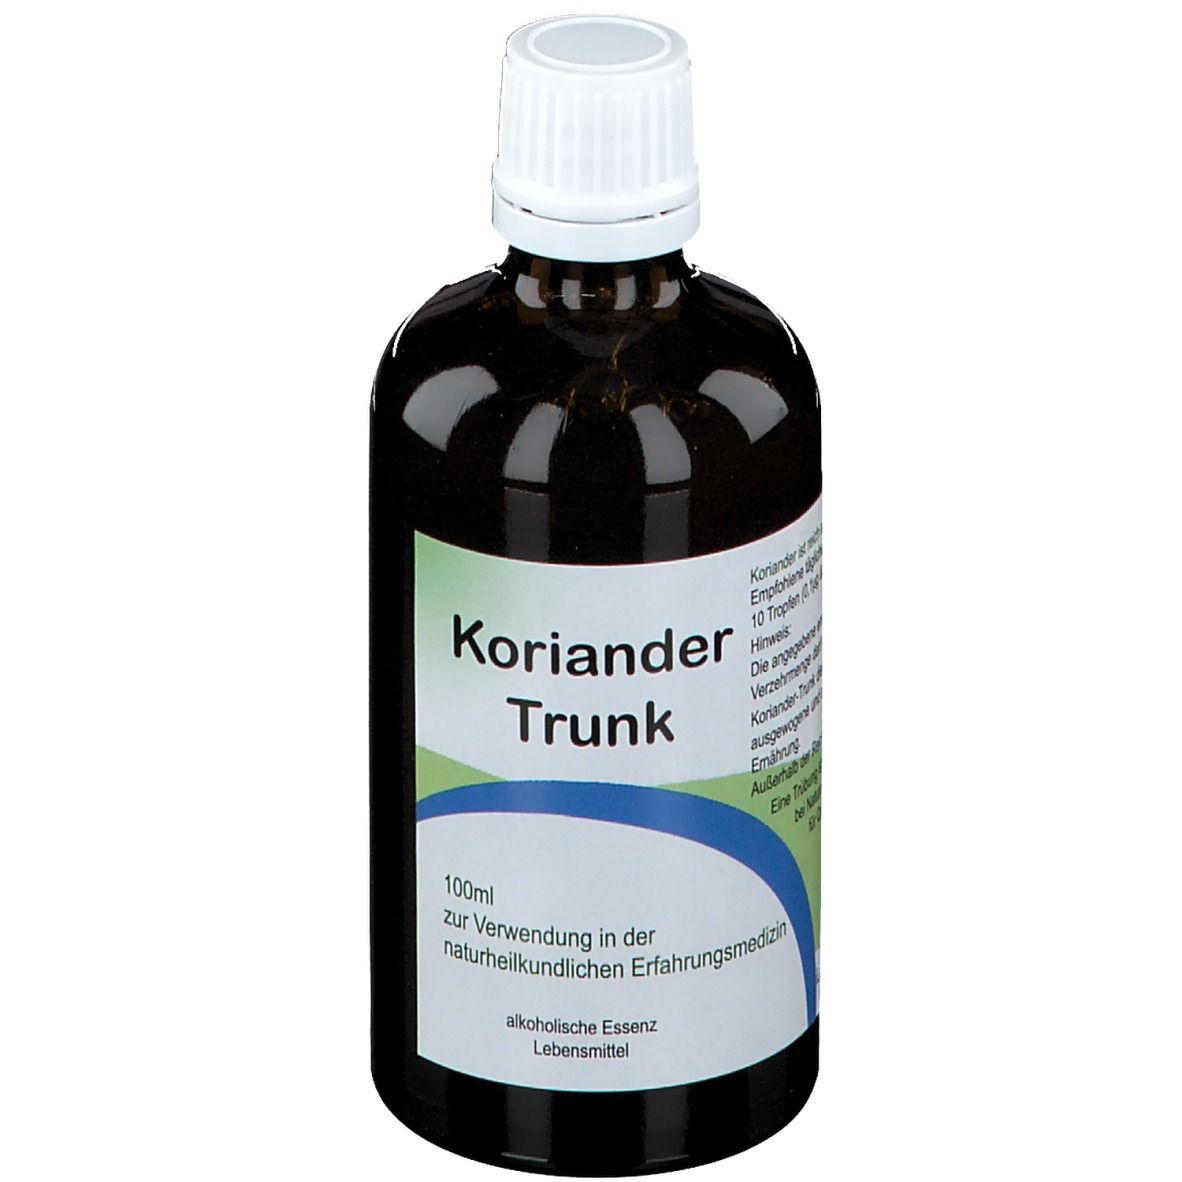 Koriander-Trunk